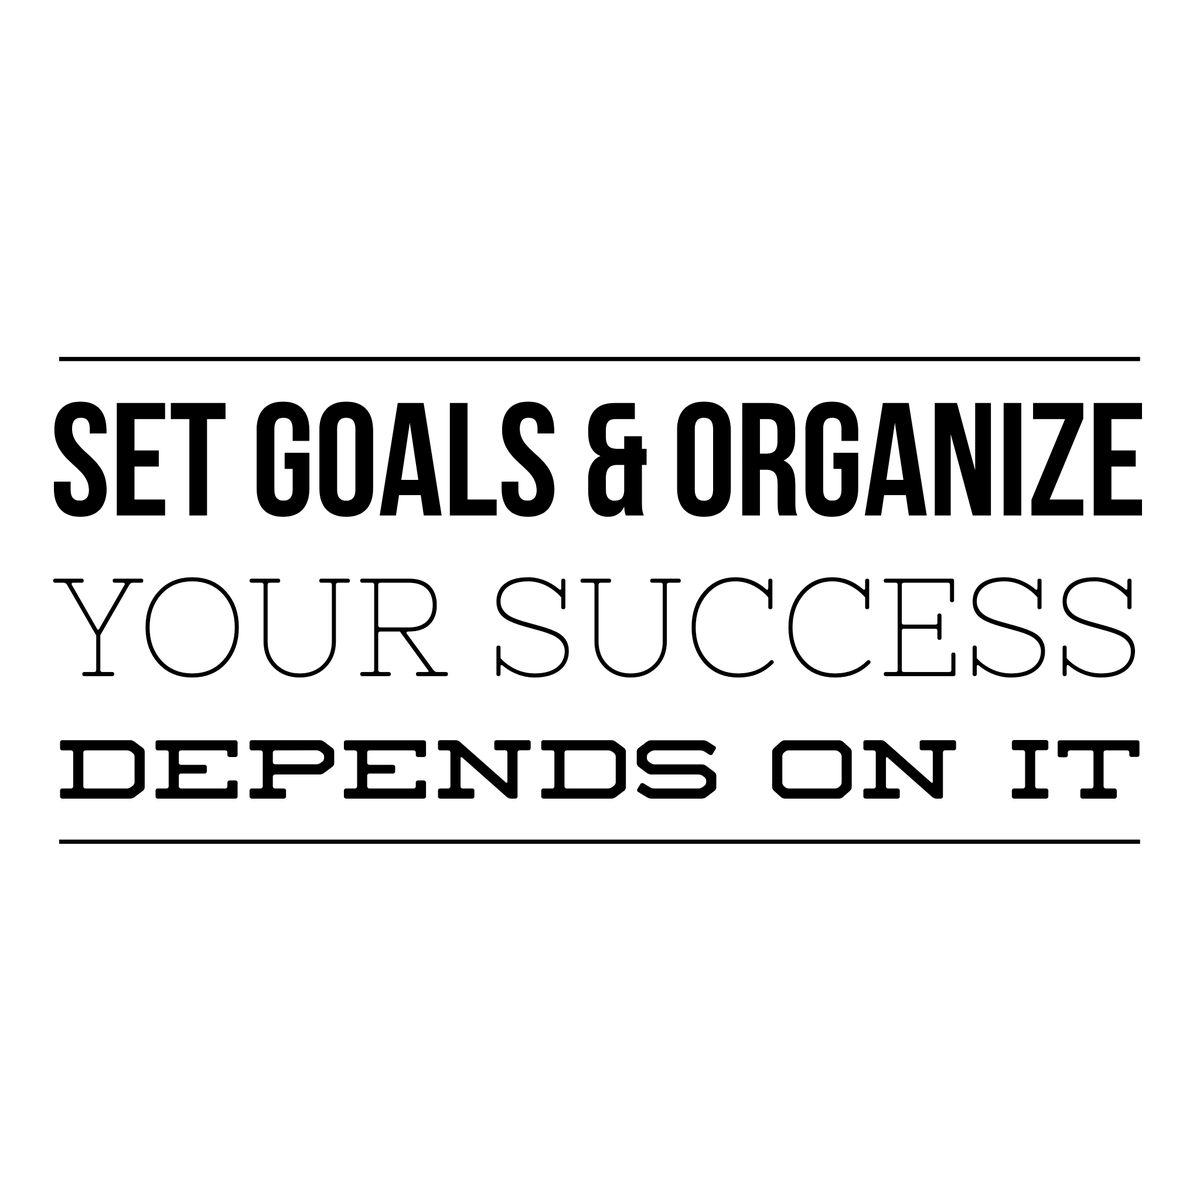 Success follows effort. Make a plan and follow it. - MyScheduledBiz.com

#selfemployed #mombosslife